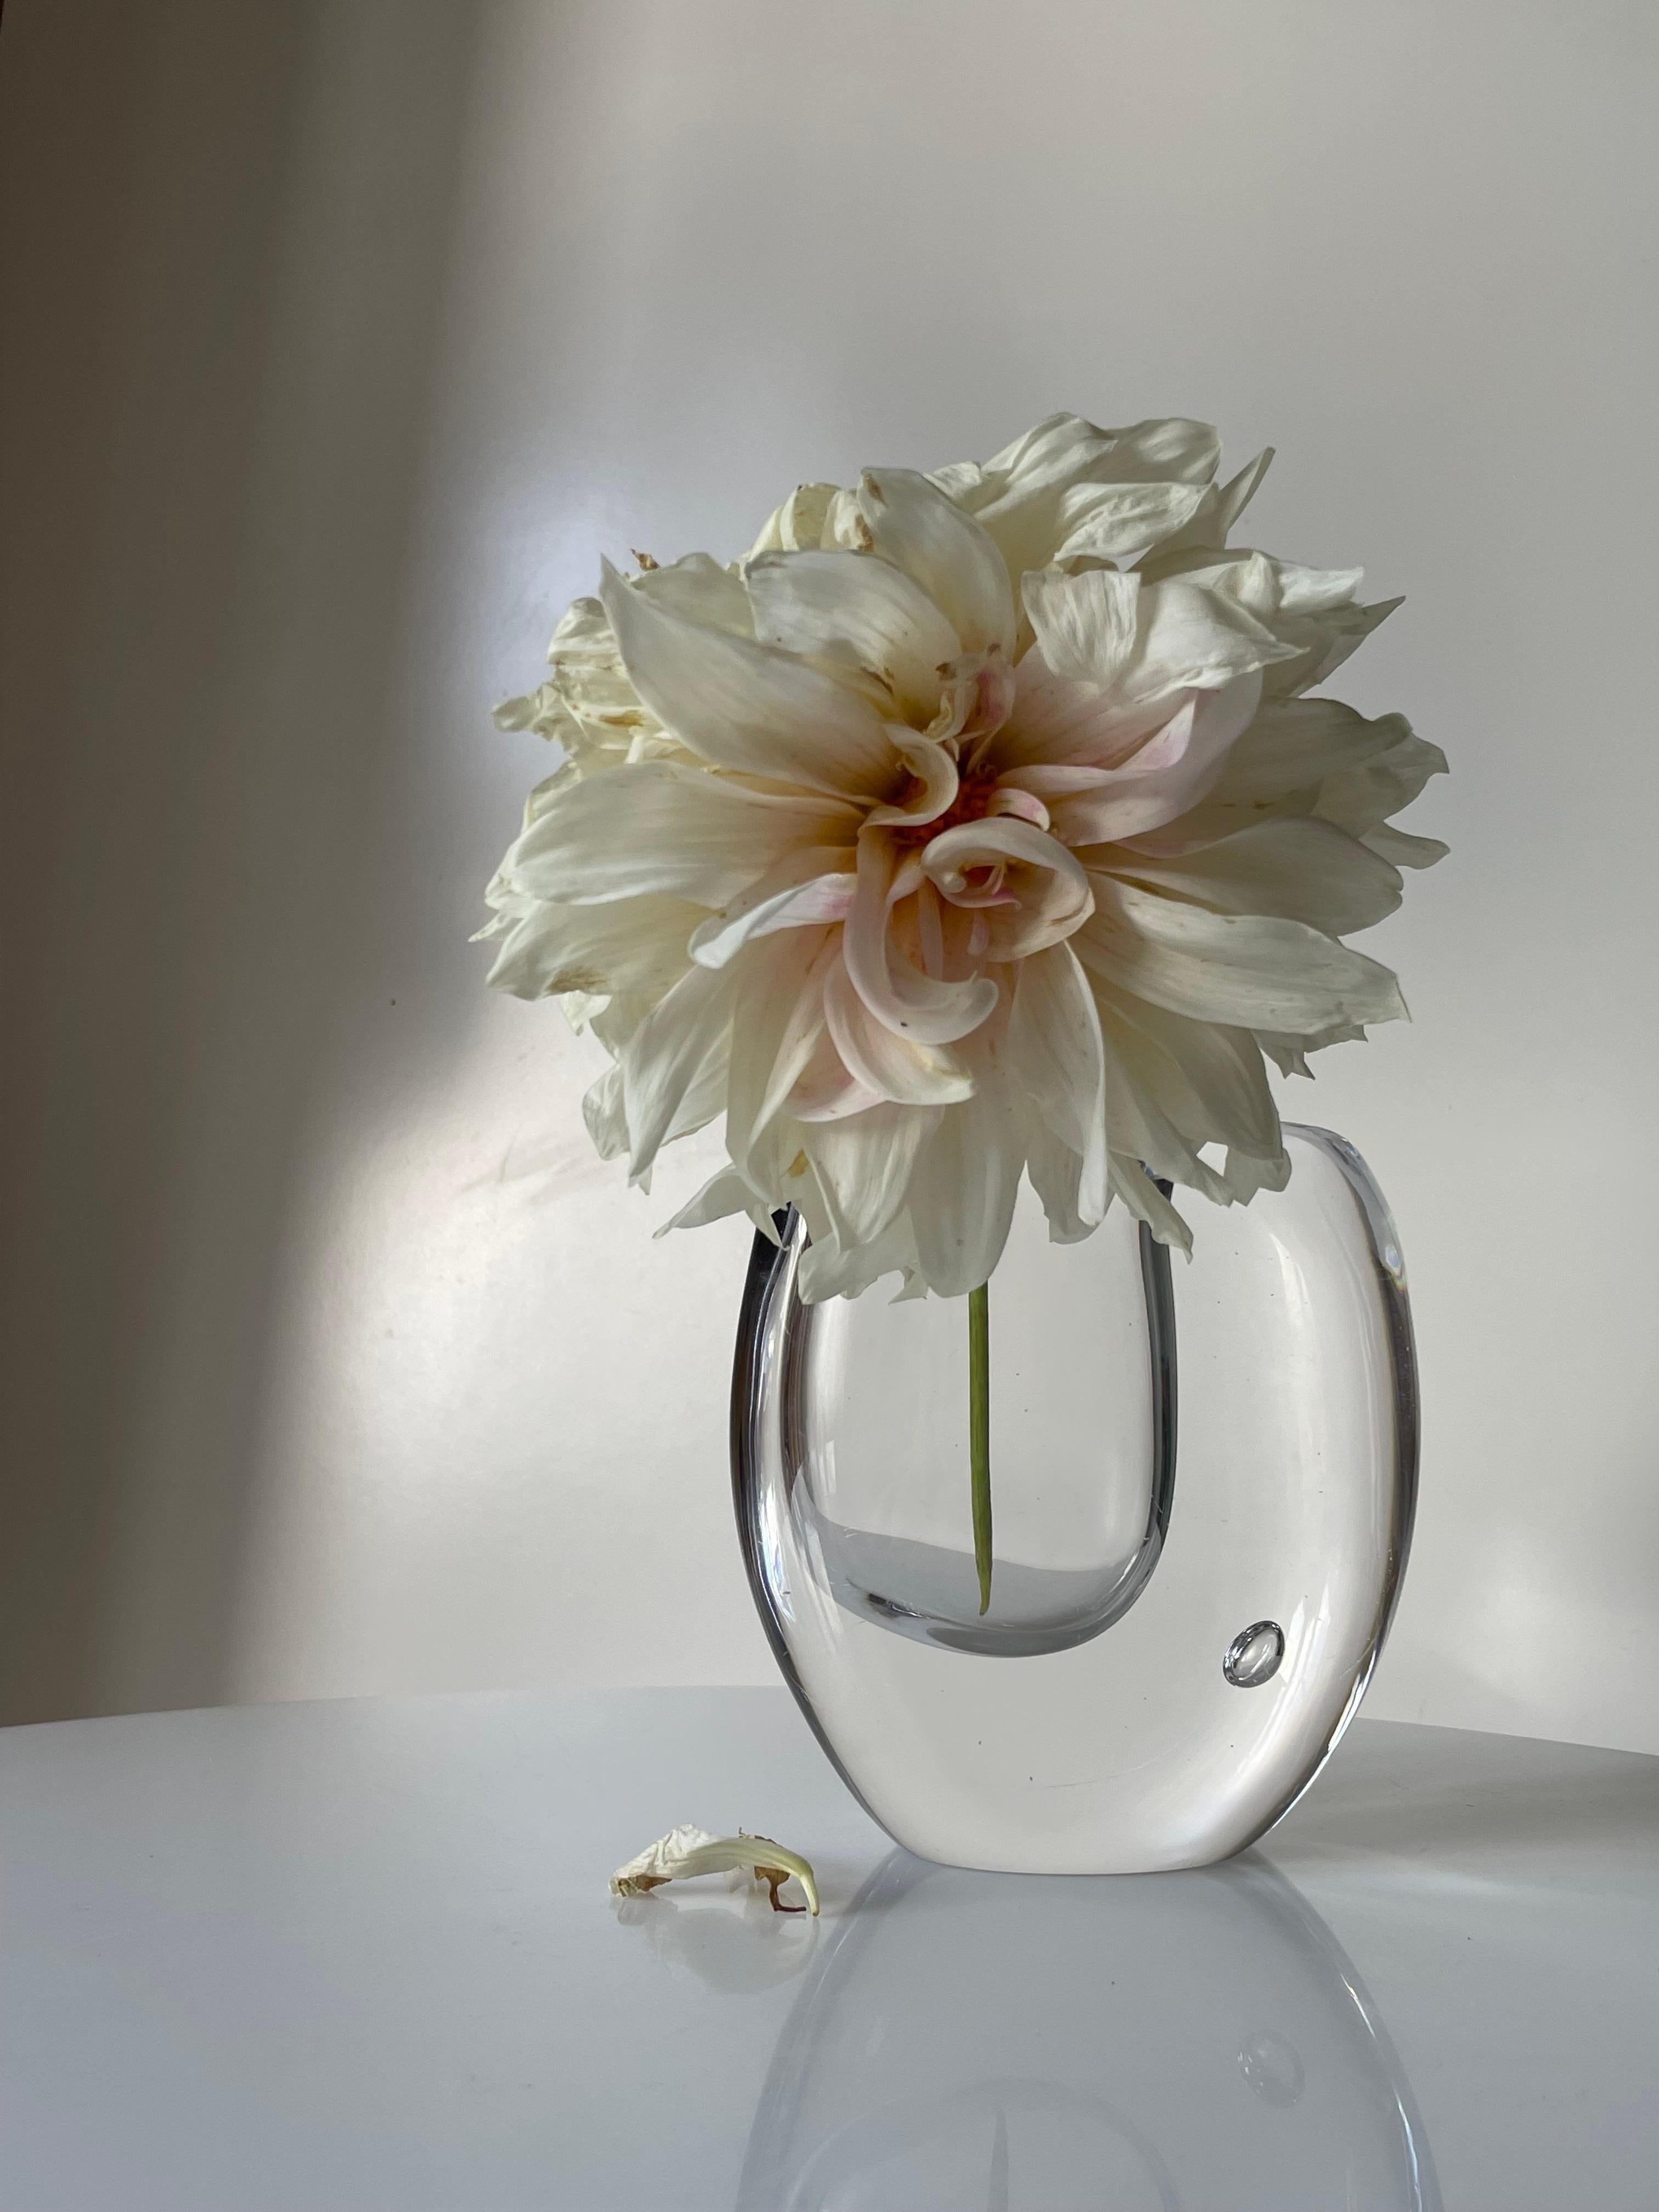 Vase moderne organique en verre clair massif soufflé à la bouche par Vicke Lindstrand. Forme asymétrique douce avec une grande bulle décorative ronde sur un côté. Magnifique pièce moderne suédoise en très bon état.
Suède, années 1950. 